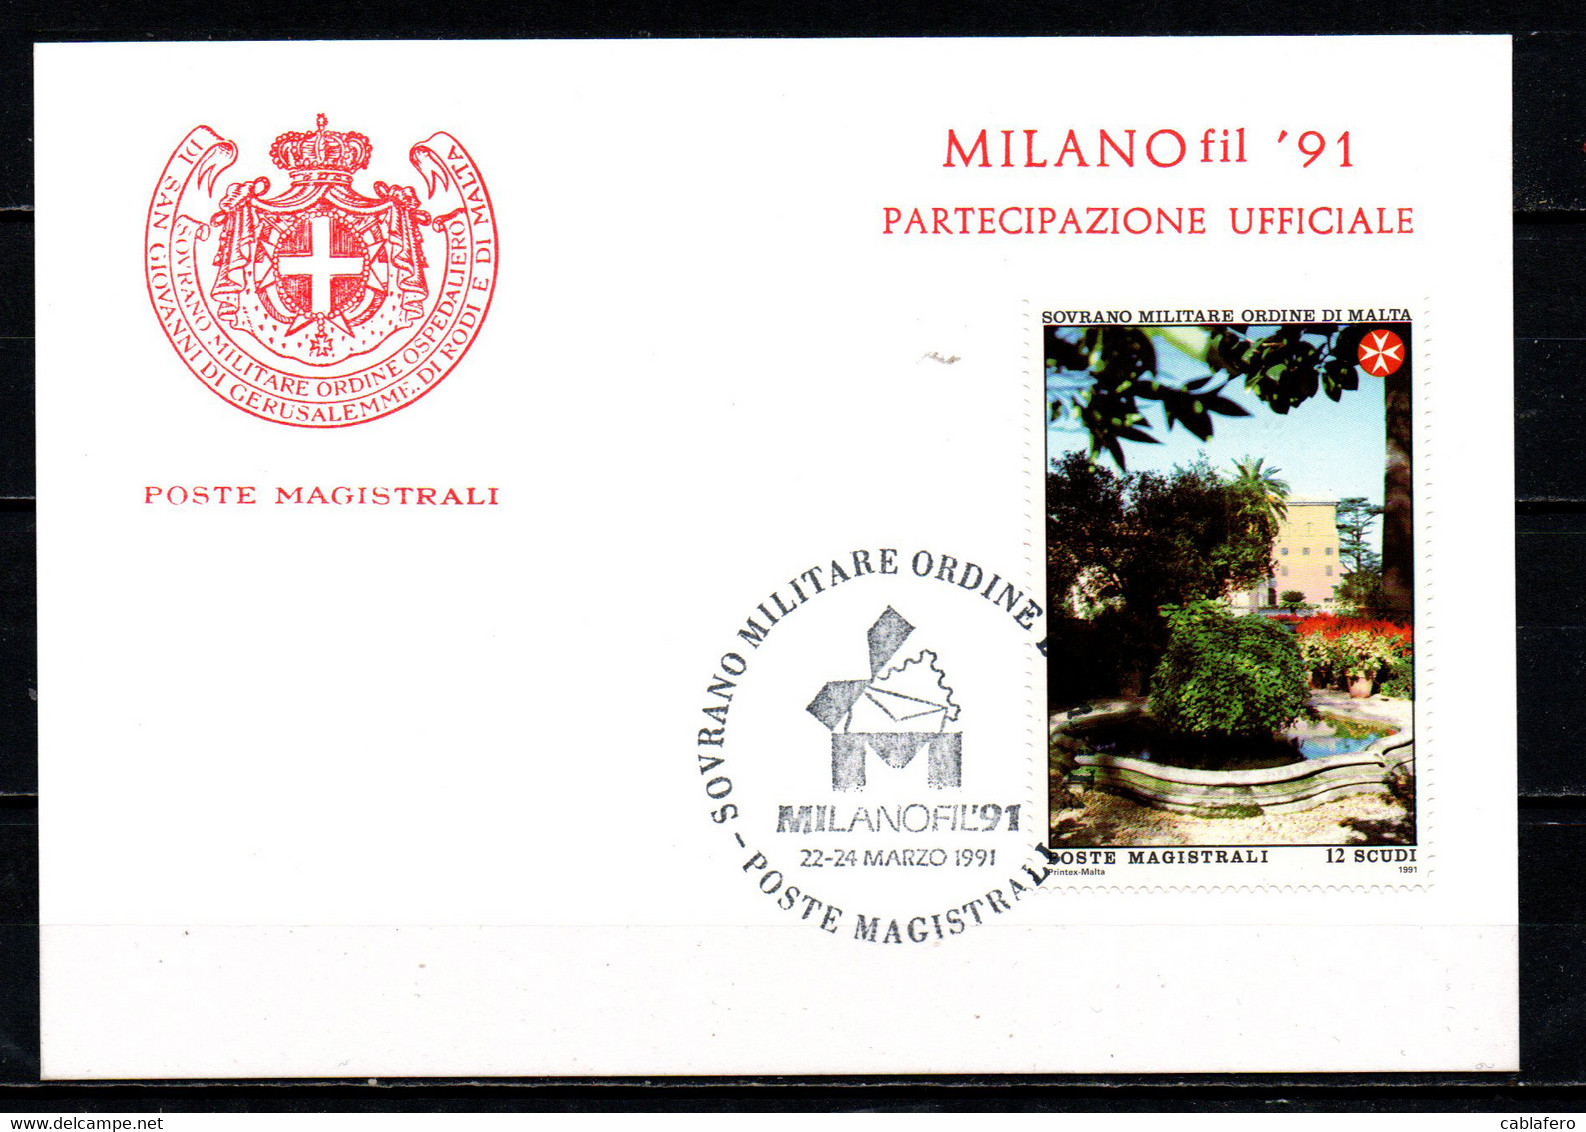 SMOM - 1991 - MILANO FIL '91 - CARTOLINA DI PARTECIPAZIONE UFFICIALE - ANNULLO MILANO FIL'91 - Sovrano Militare Ordine Di Malta